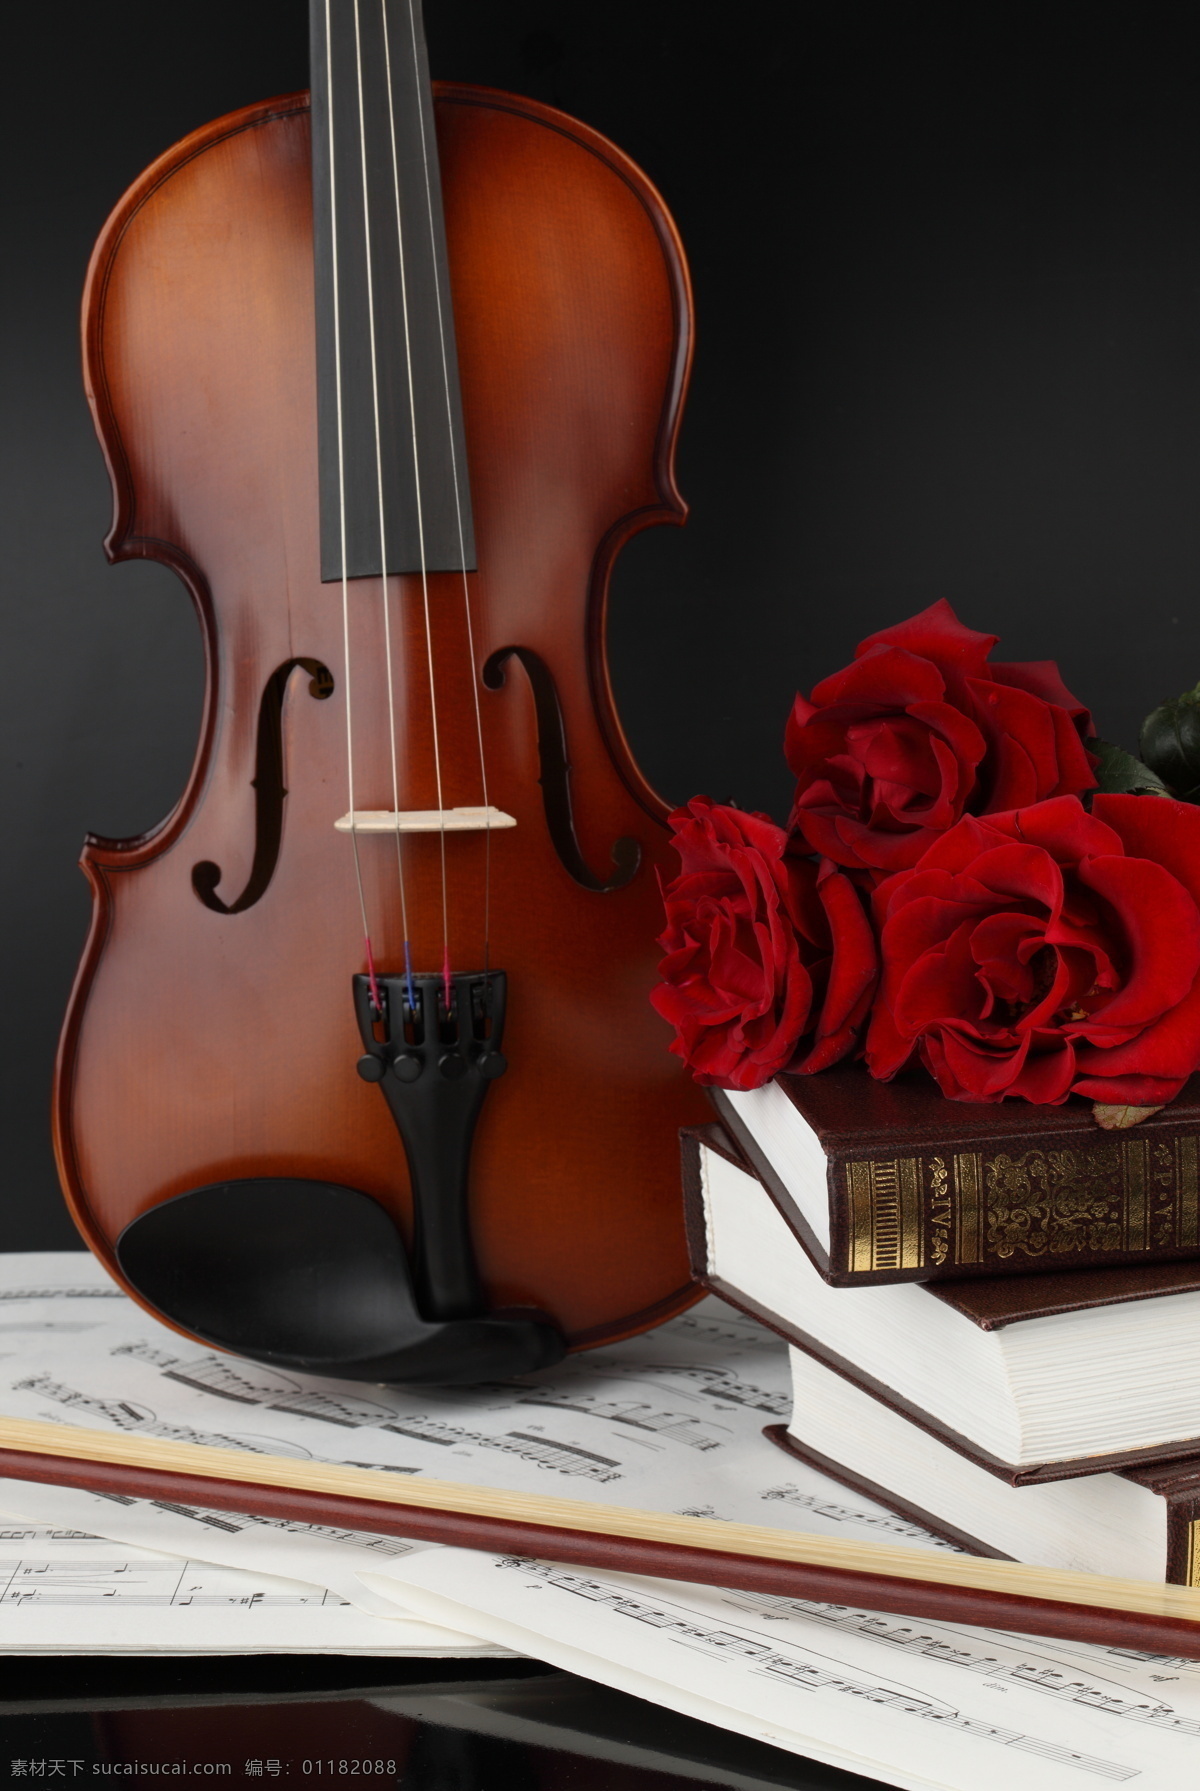 小提琴 玫瑰花 音乐 鲜花 花朵 乐器 乐谱 书本 红玫瑰 影音娱乐 生活百科 黑色